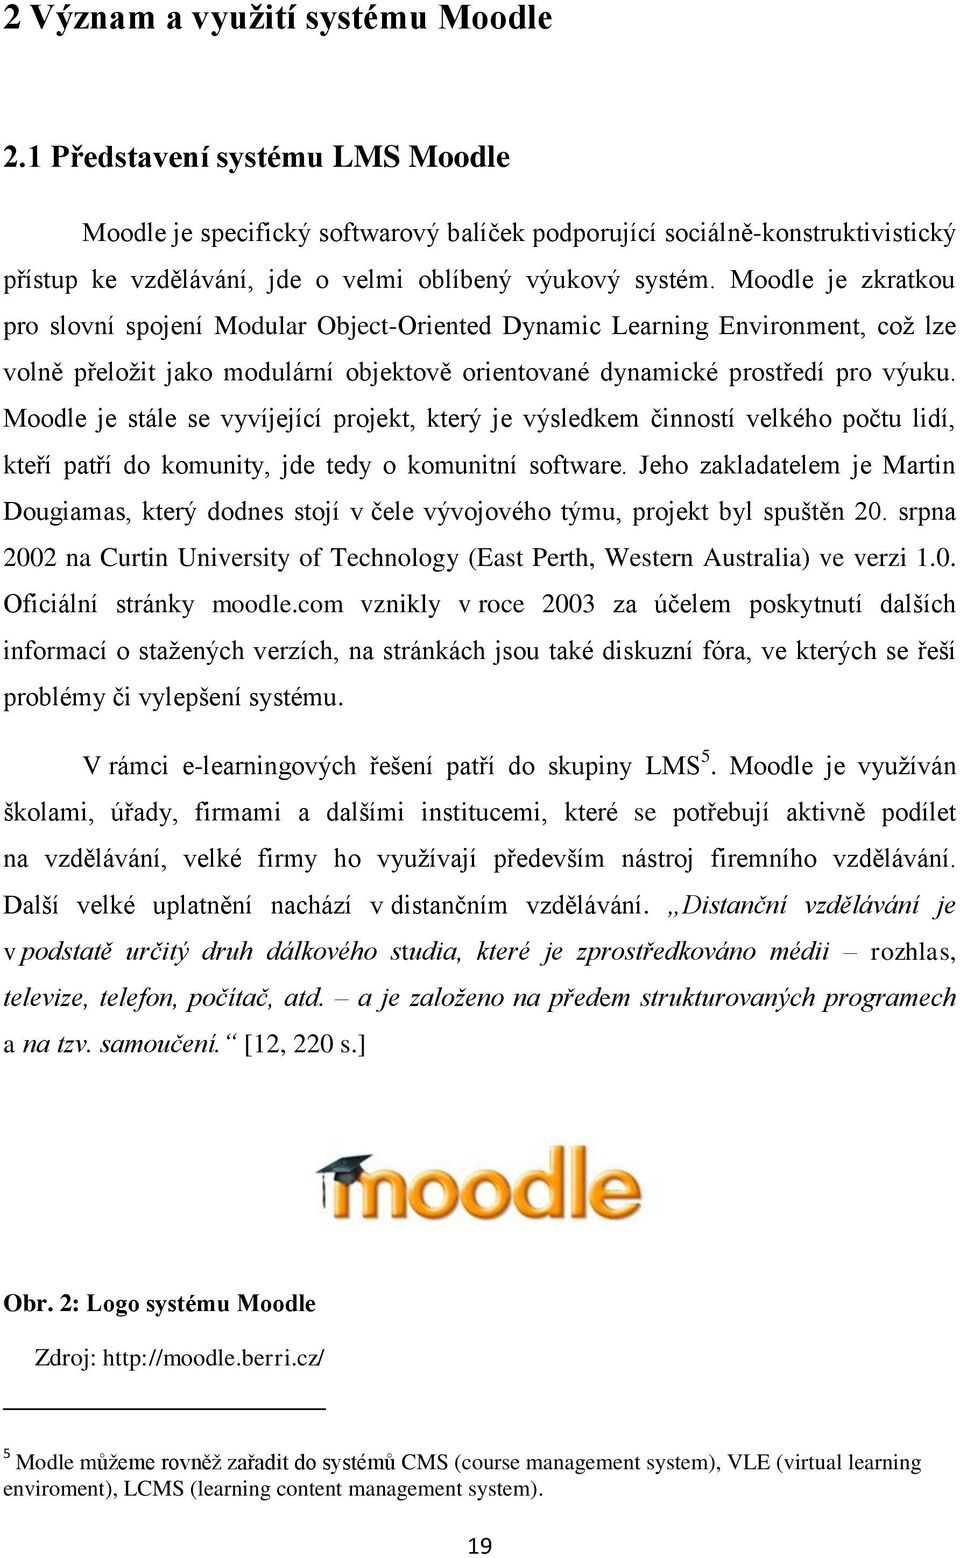 Moodle je zkratkou pro slovní spojení Modular Object-Oriented Dynamic Learning Environment, coţ lze volně přeloţit jako modulární objektově orientované dynamické prostředí pro výuku.